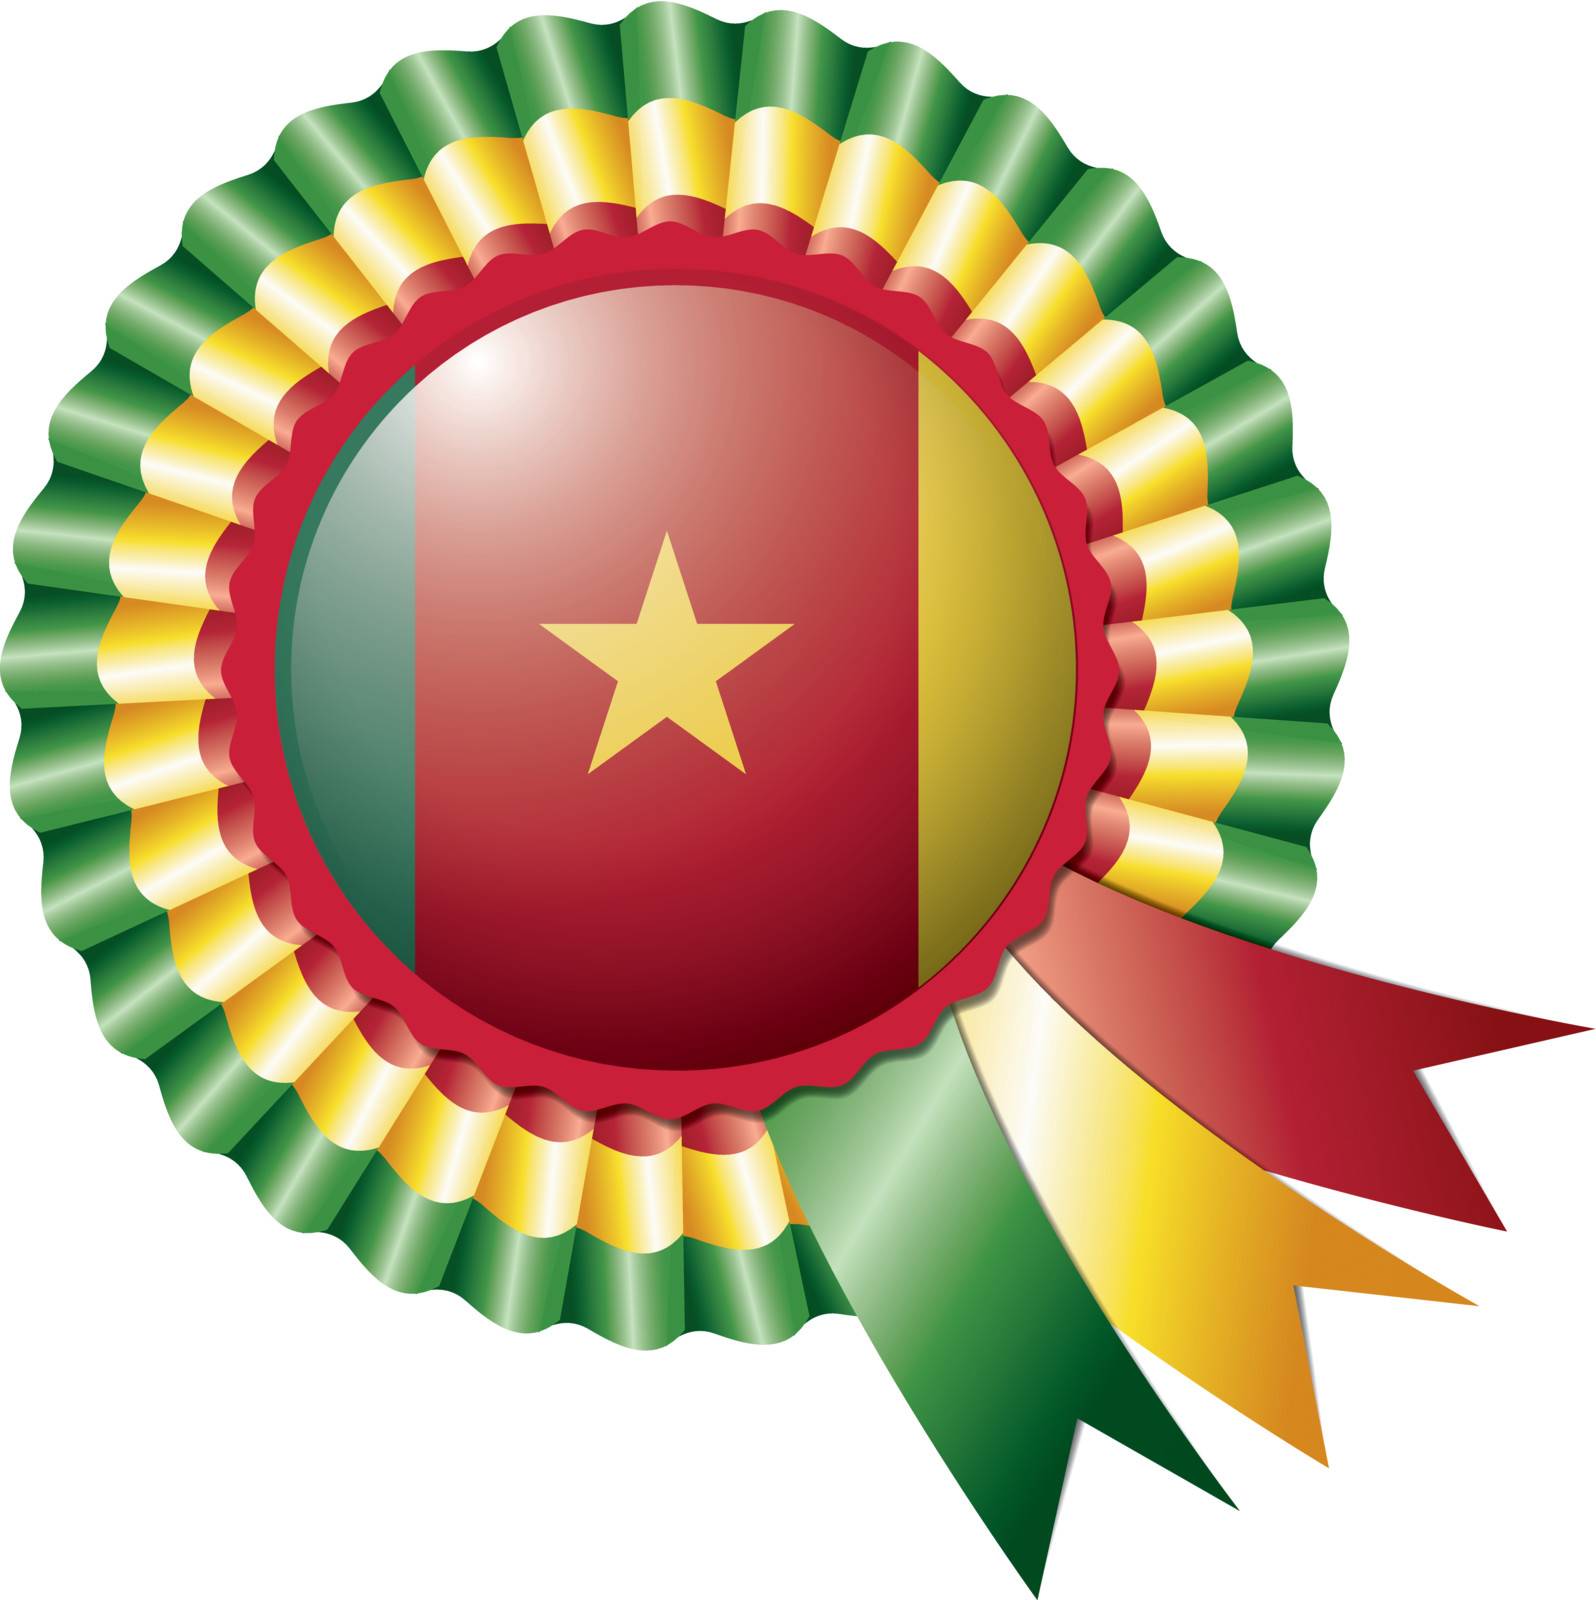 Cameroon detailed silk rosette flag, eps10 vector illustration